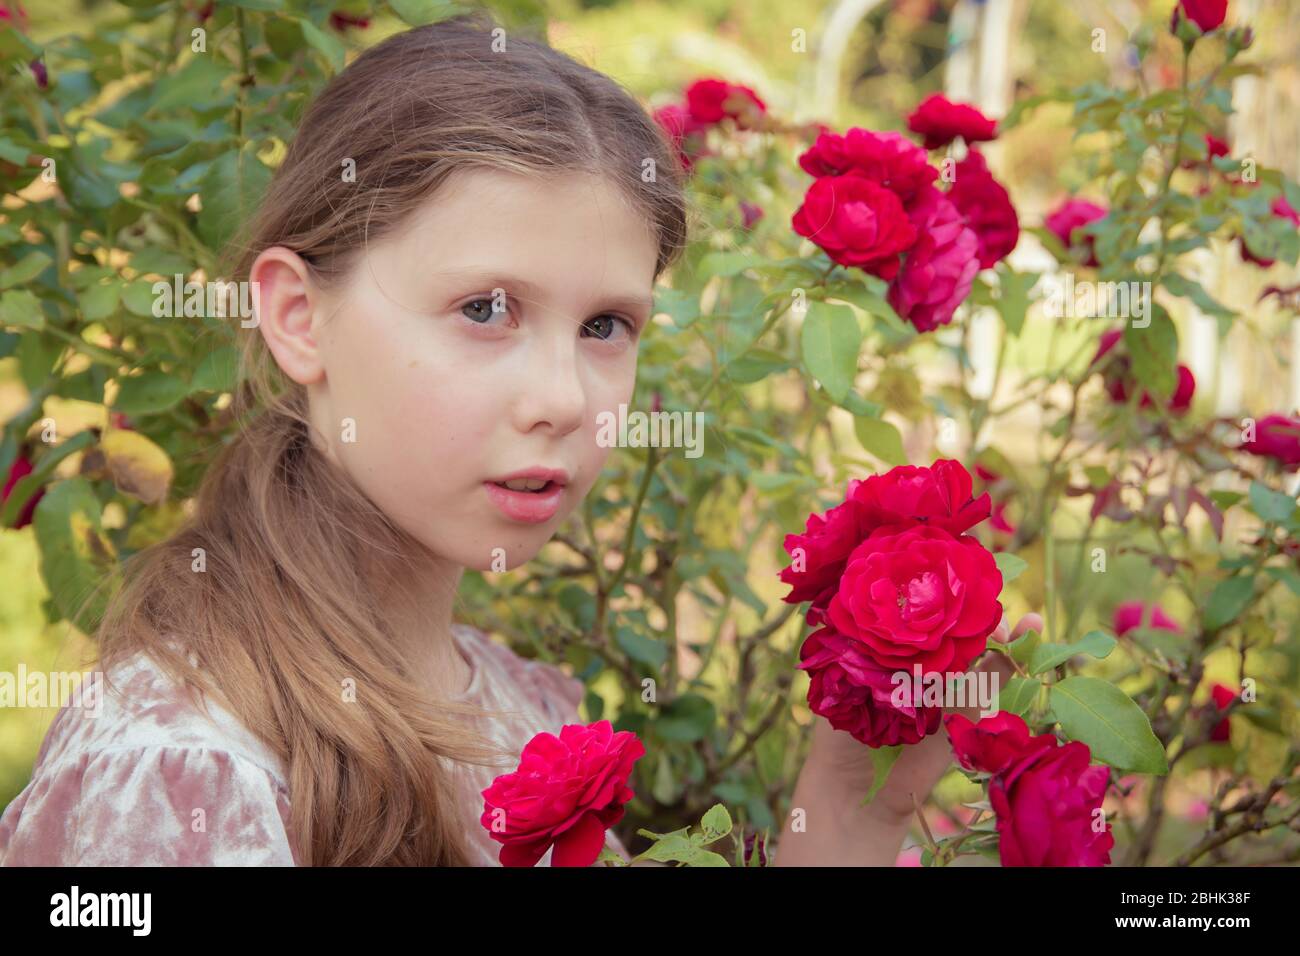 Un ritratto fresco-affrontato di una bella ragazza che tiene le rose in un giardino estivo Foto Stock